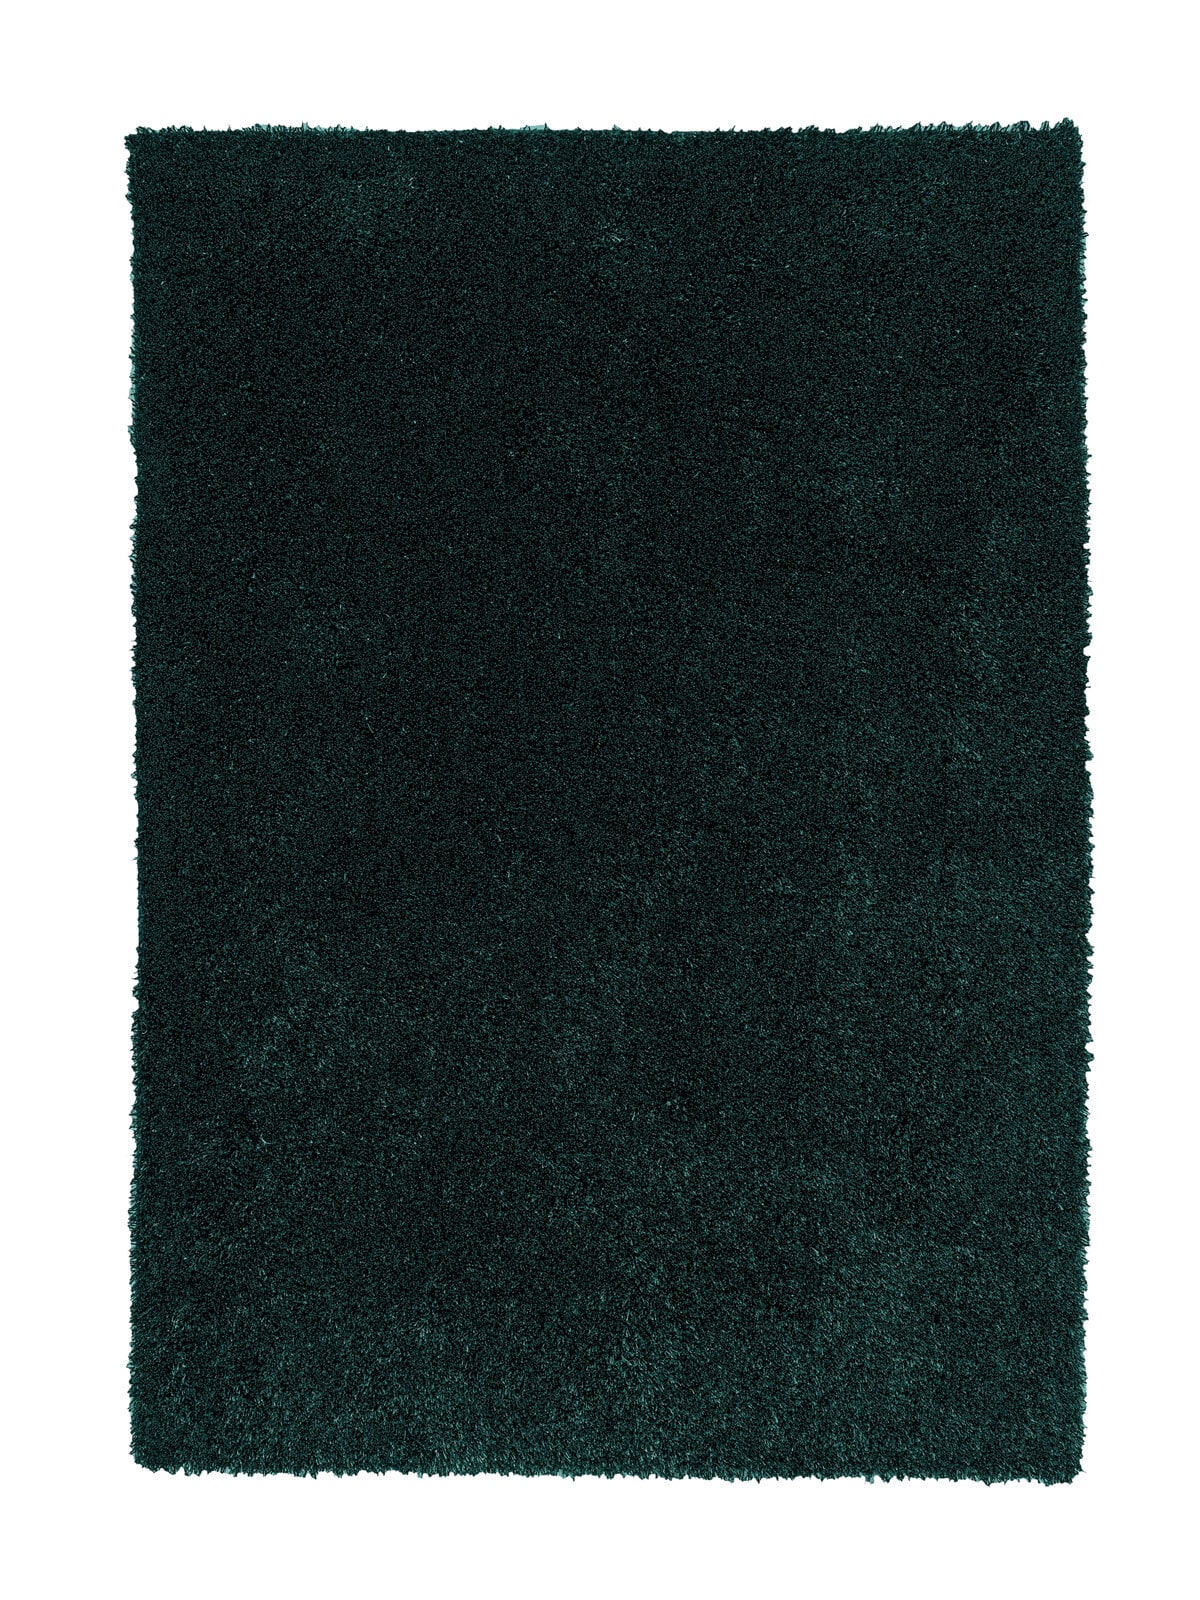 SCHÖNER WOHNEN-Kollektion Hochflorteppich NEW FEELING 170 x 240 cm dunkelgrün 